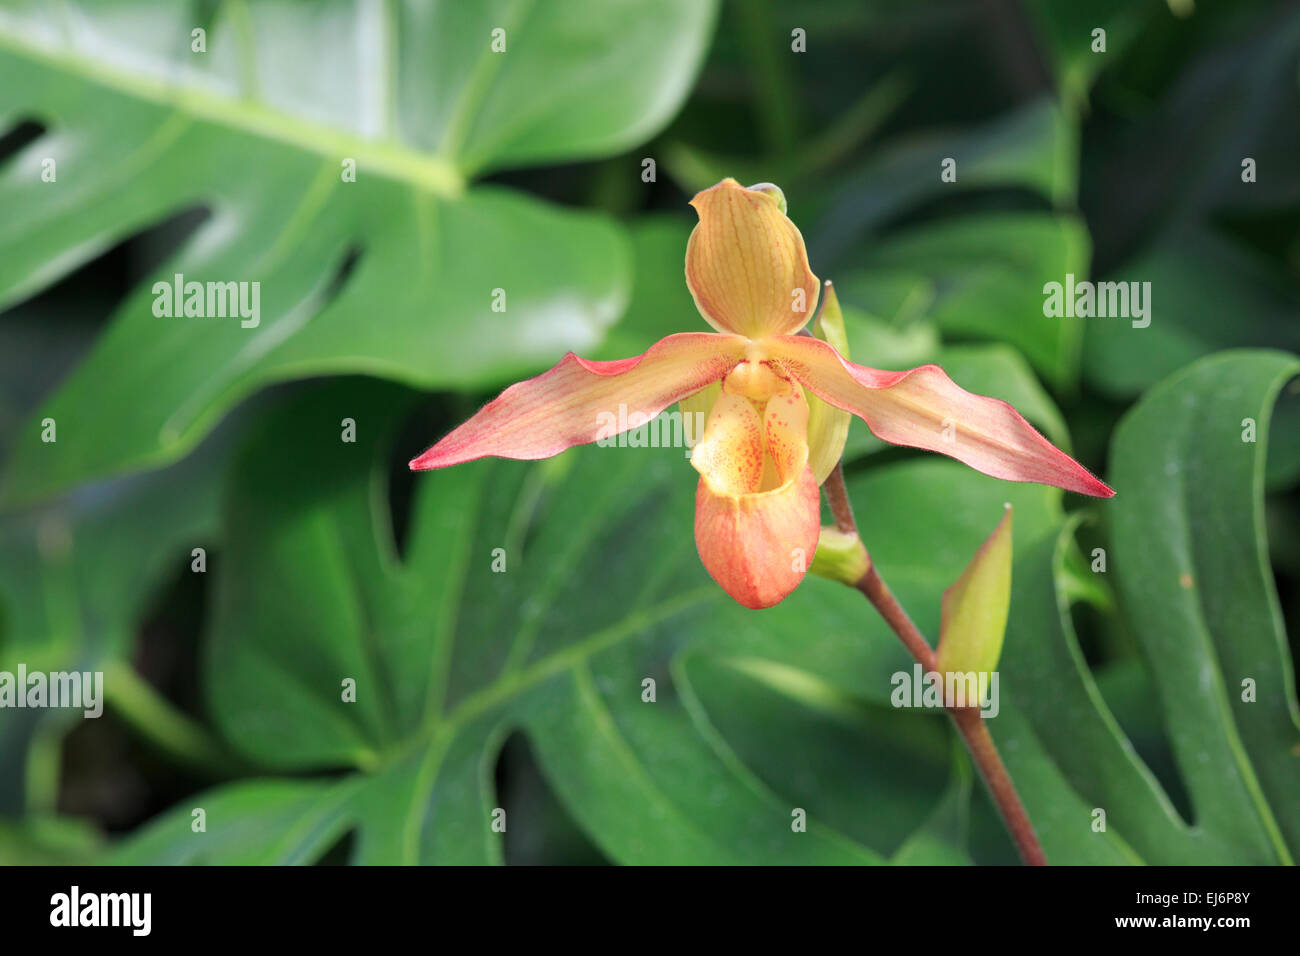 Phragmipedium orchid Stock Photo